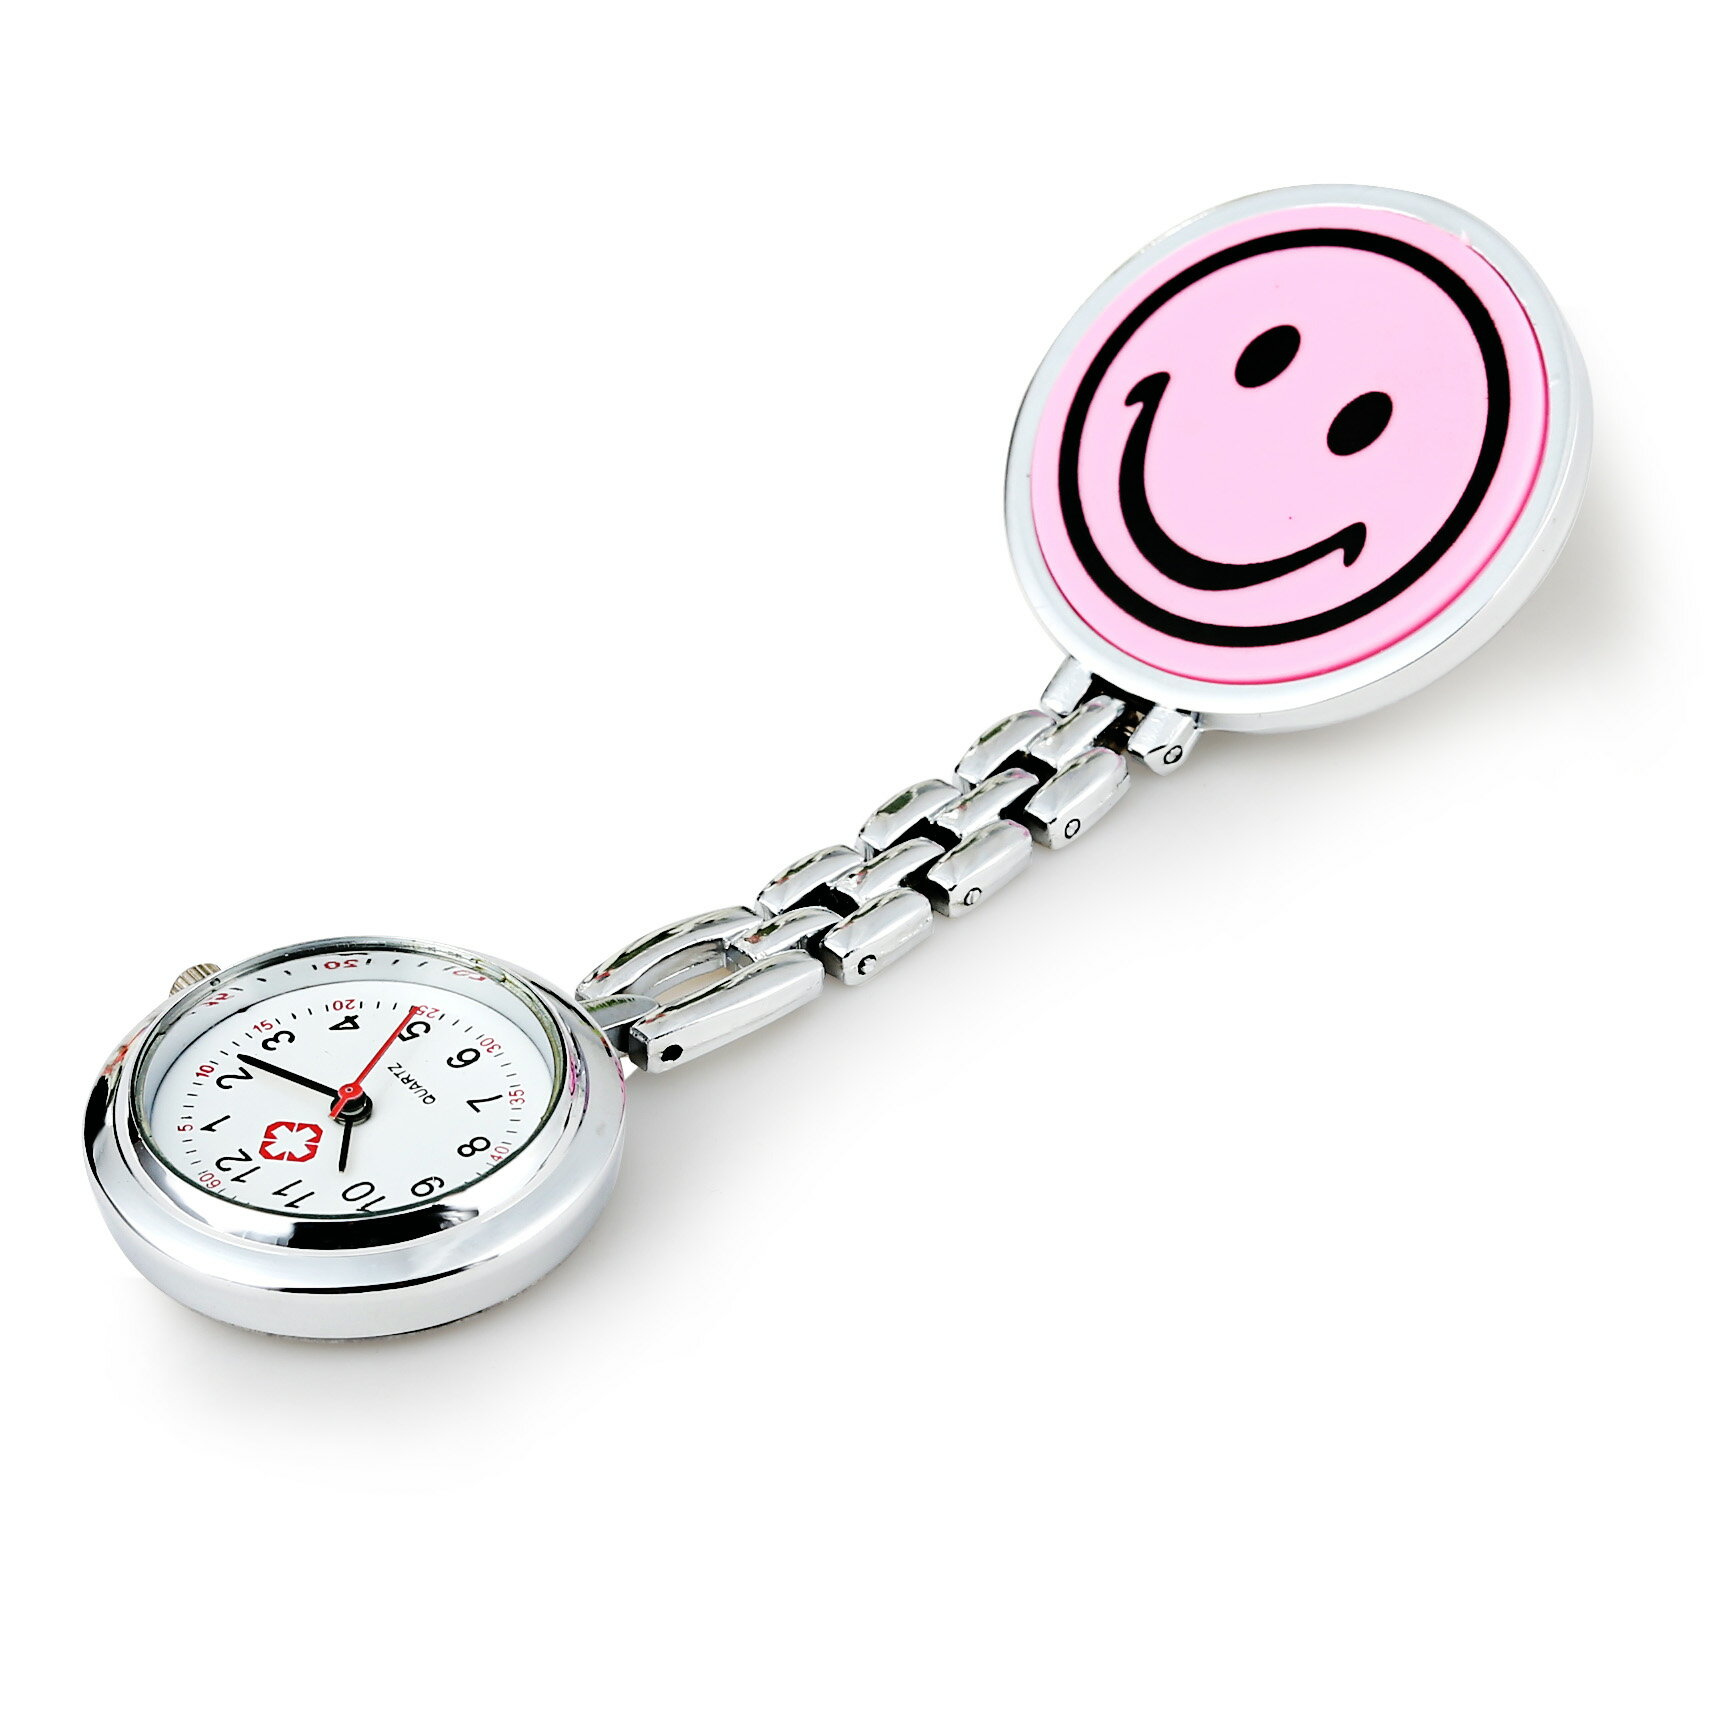 護士錶 護士錶可愛胸錶女掛錶夾式防水耐用電子數字簡約男學生考試用懷錶『CM398245』